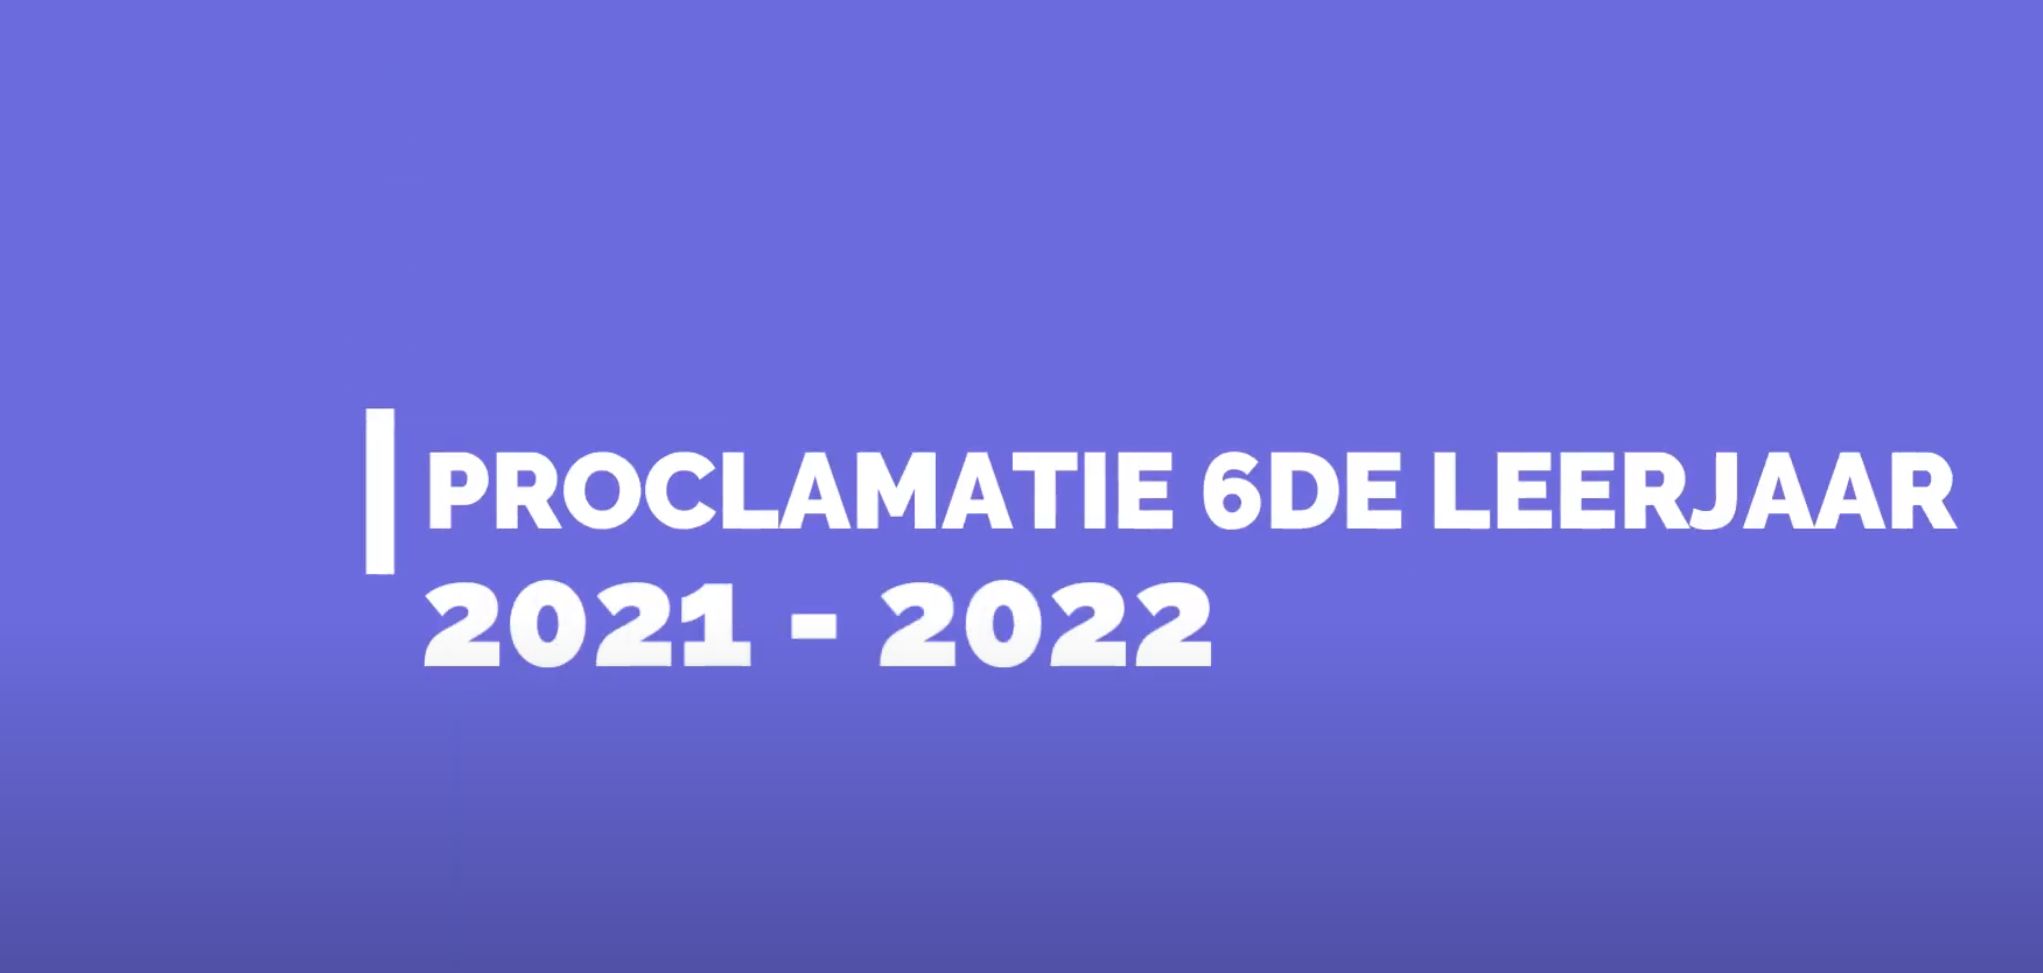 Proclamatie 6de leerjaar 2021-2022